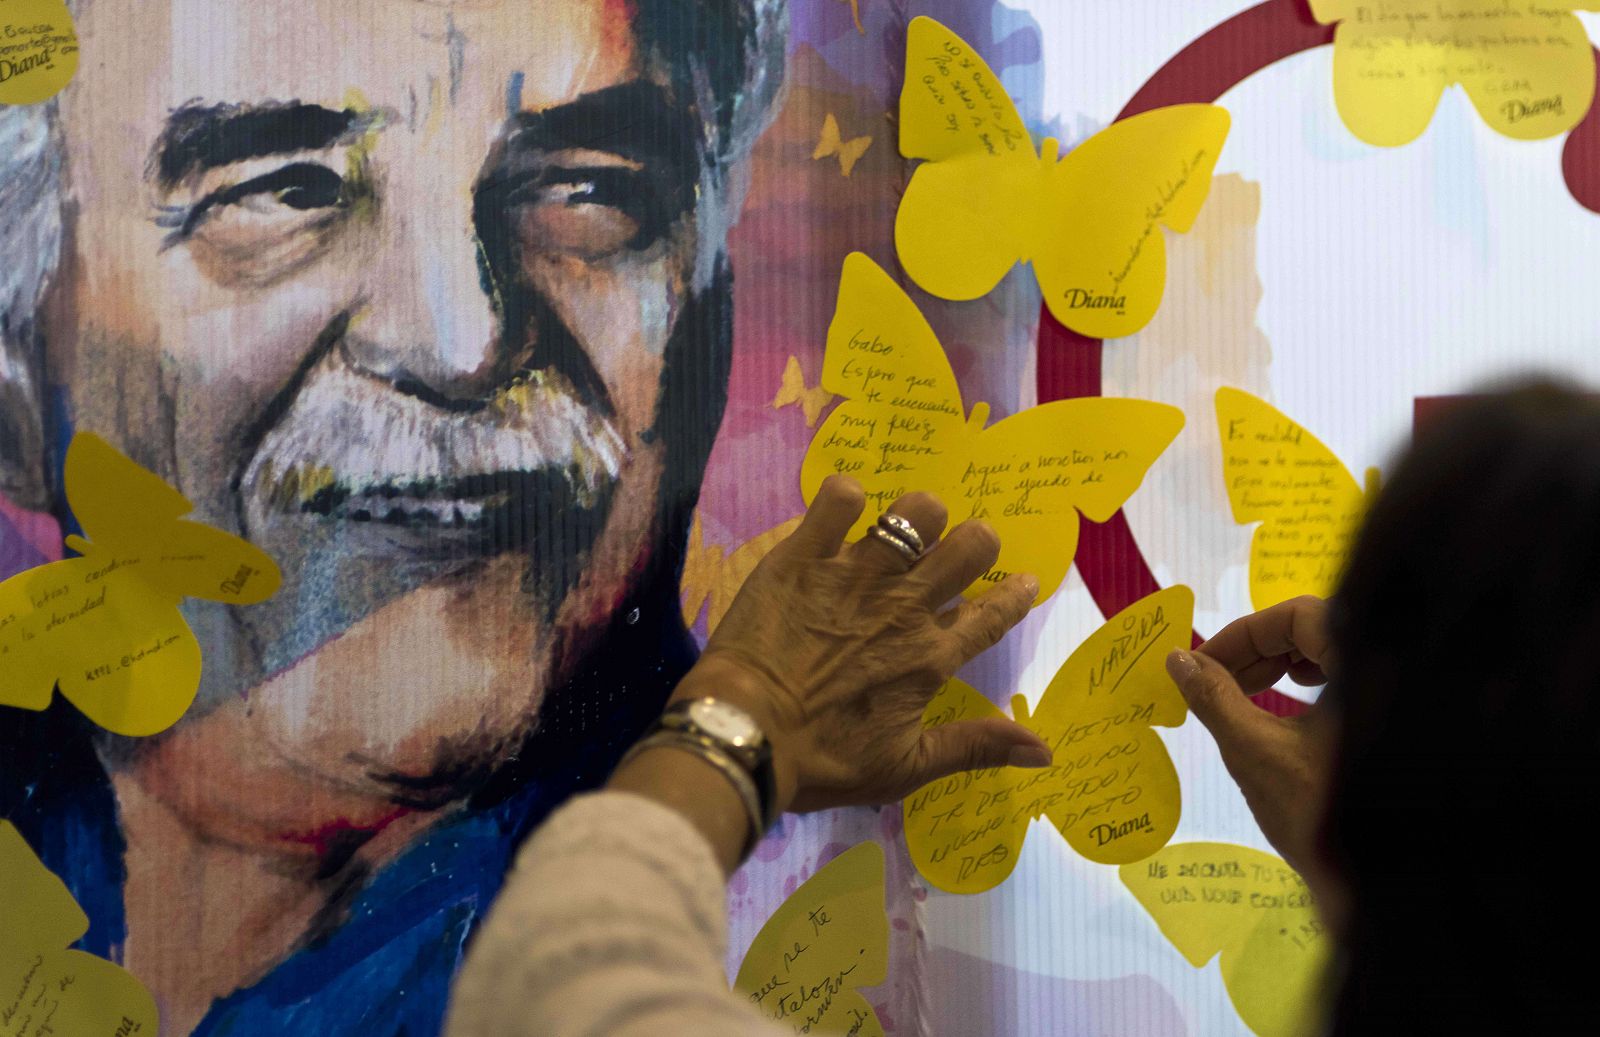 Una mujer pega una mariposa de papel amarillo con sus recuerdos sobre Gabriel García Márquez en una librería de Ciudad de México.